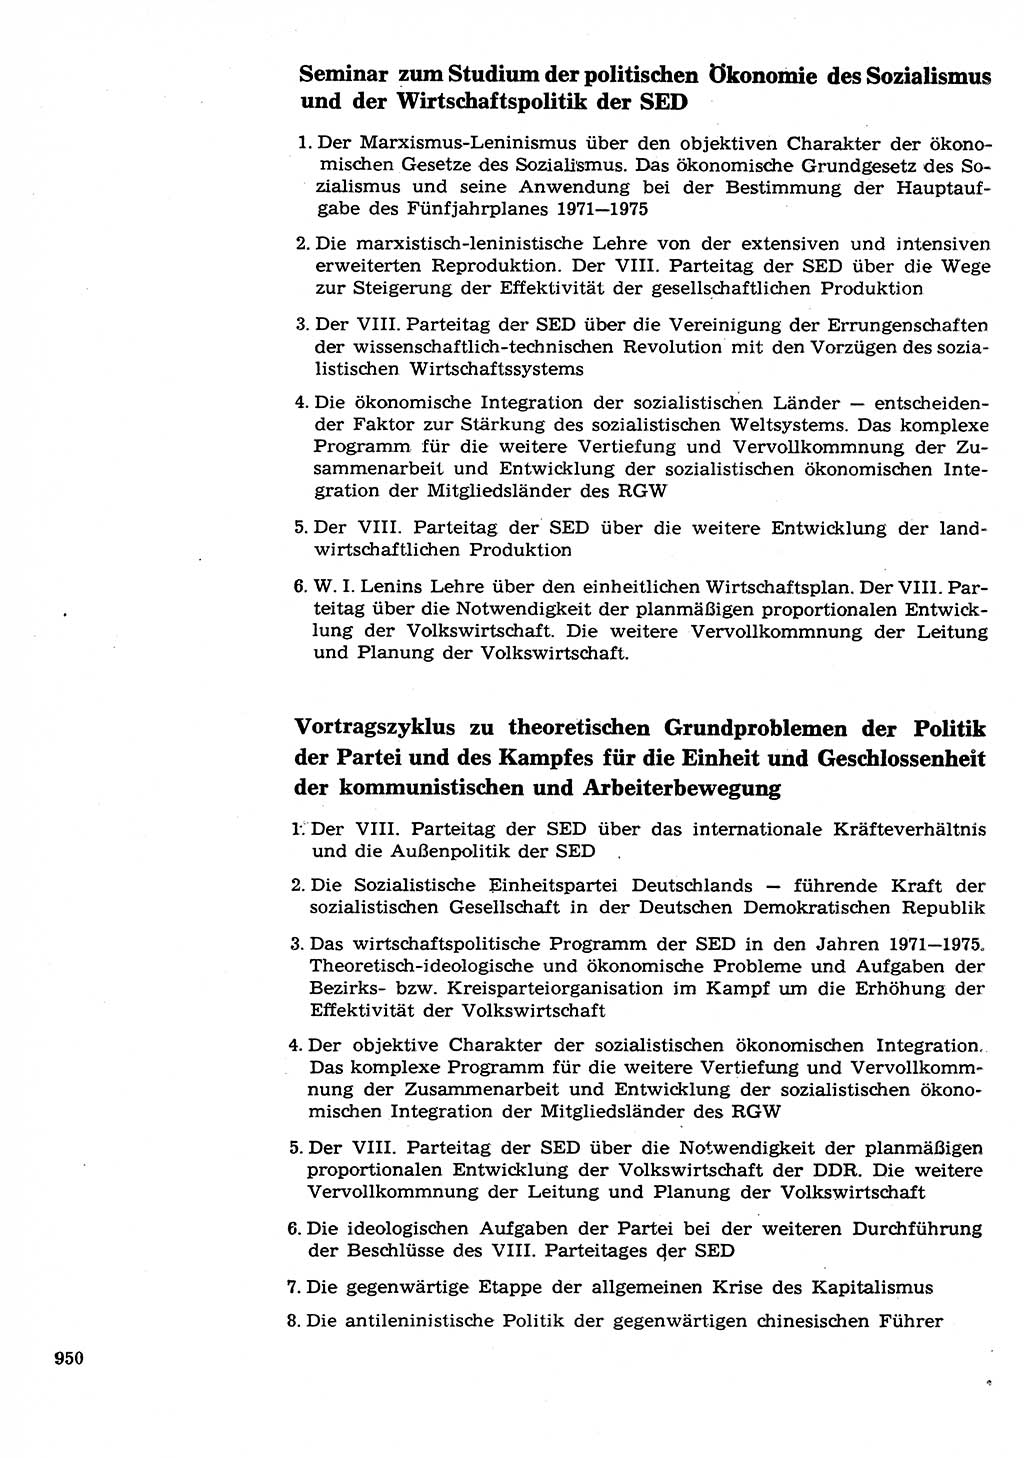 Neuer Weg (NW), Organ des Zentralkomitees (ZK) der SED (Sozialistische Einheitspartei Deutschlands) für Fragen des Parteilebens, 26. Jahrgang [Deutsche Demokratische Republik (DDR)] 1971, Seite 950 (NW ZK SED DDR 1971, S. 950)